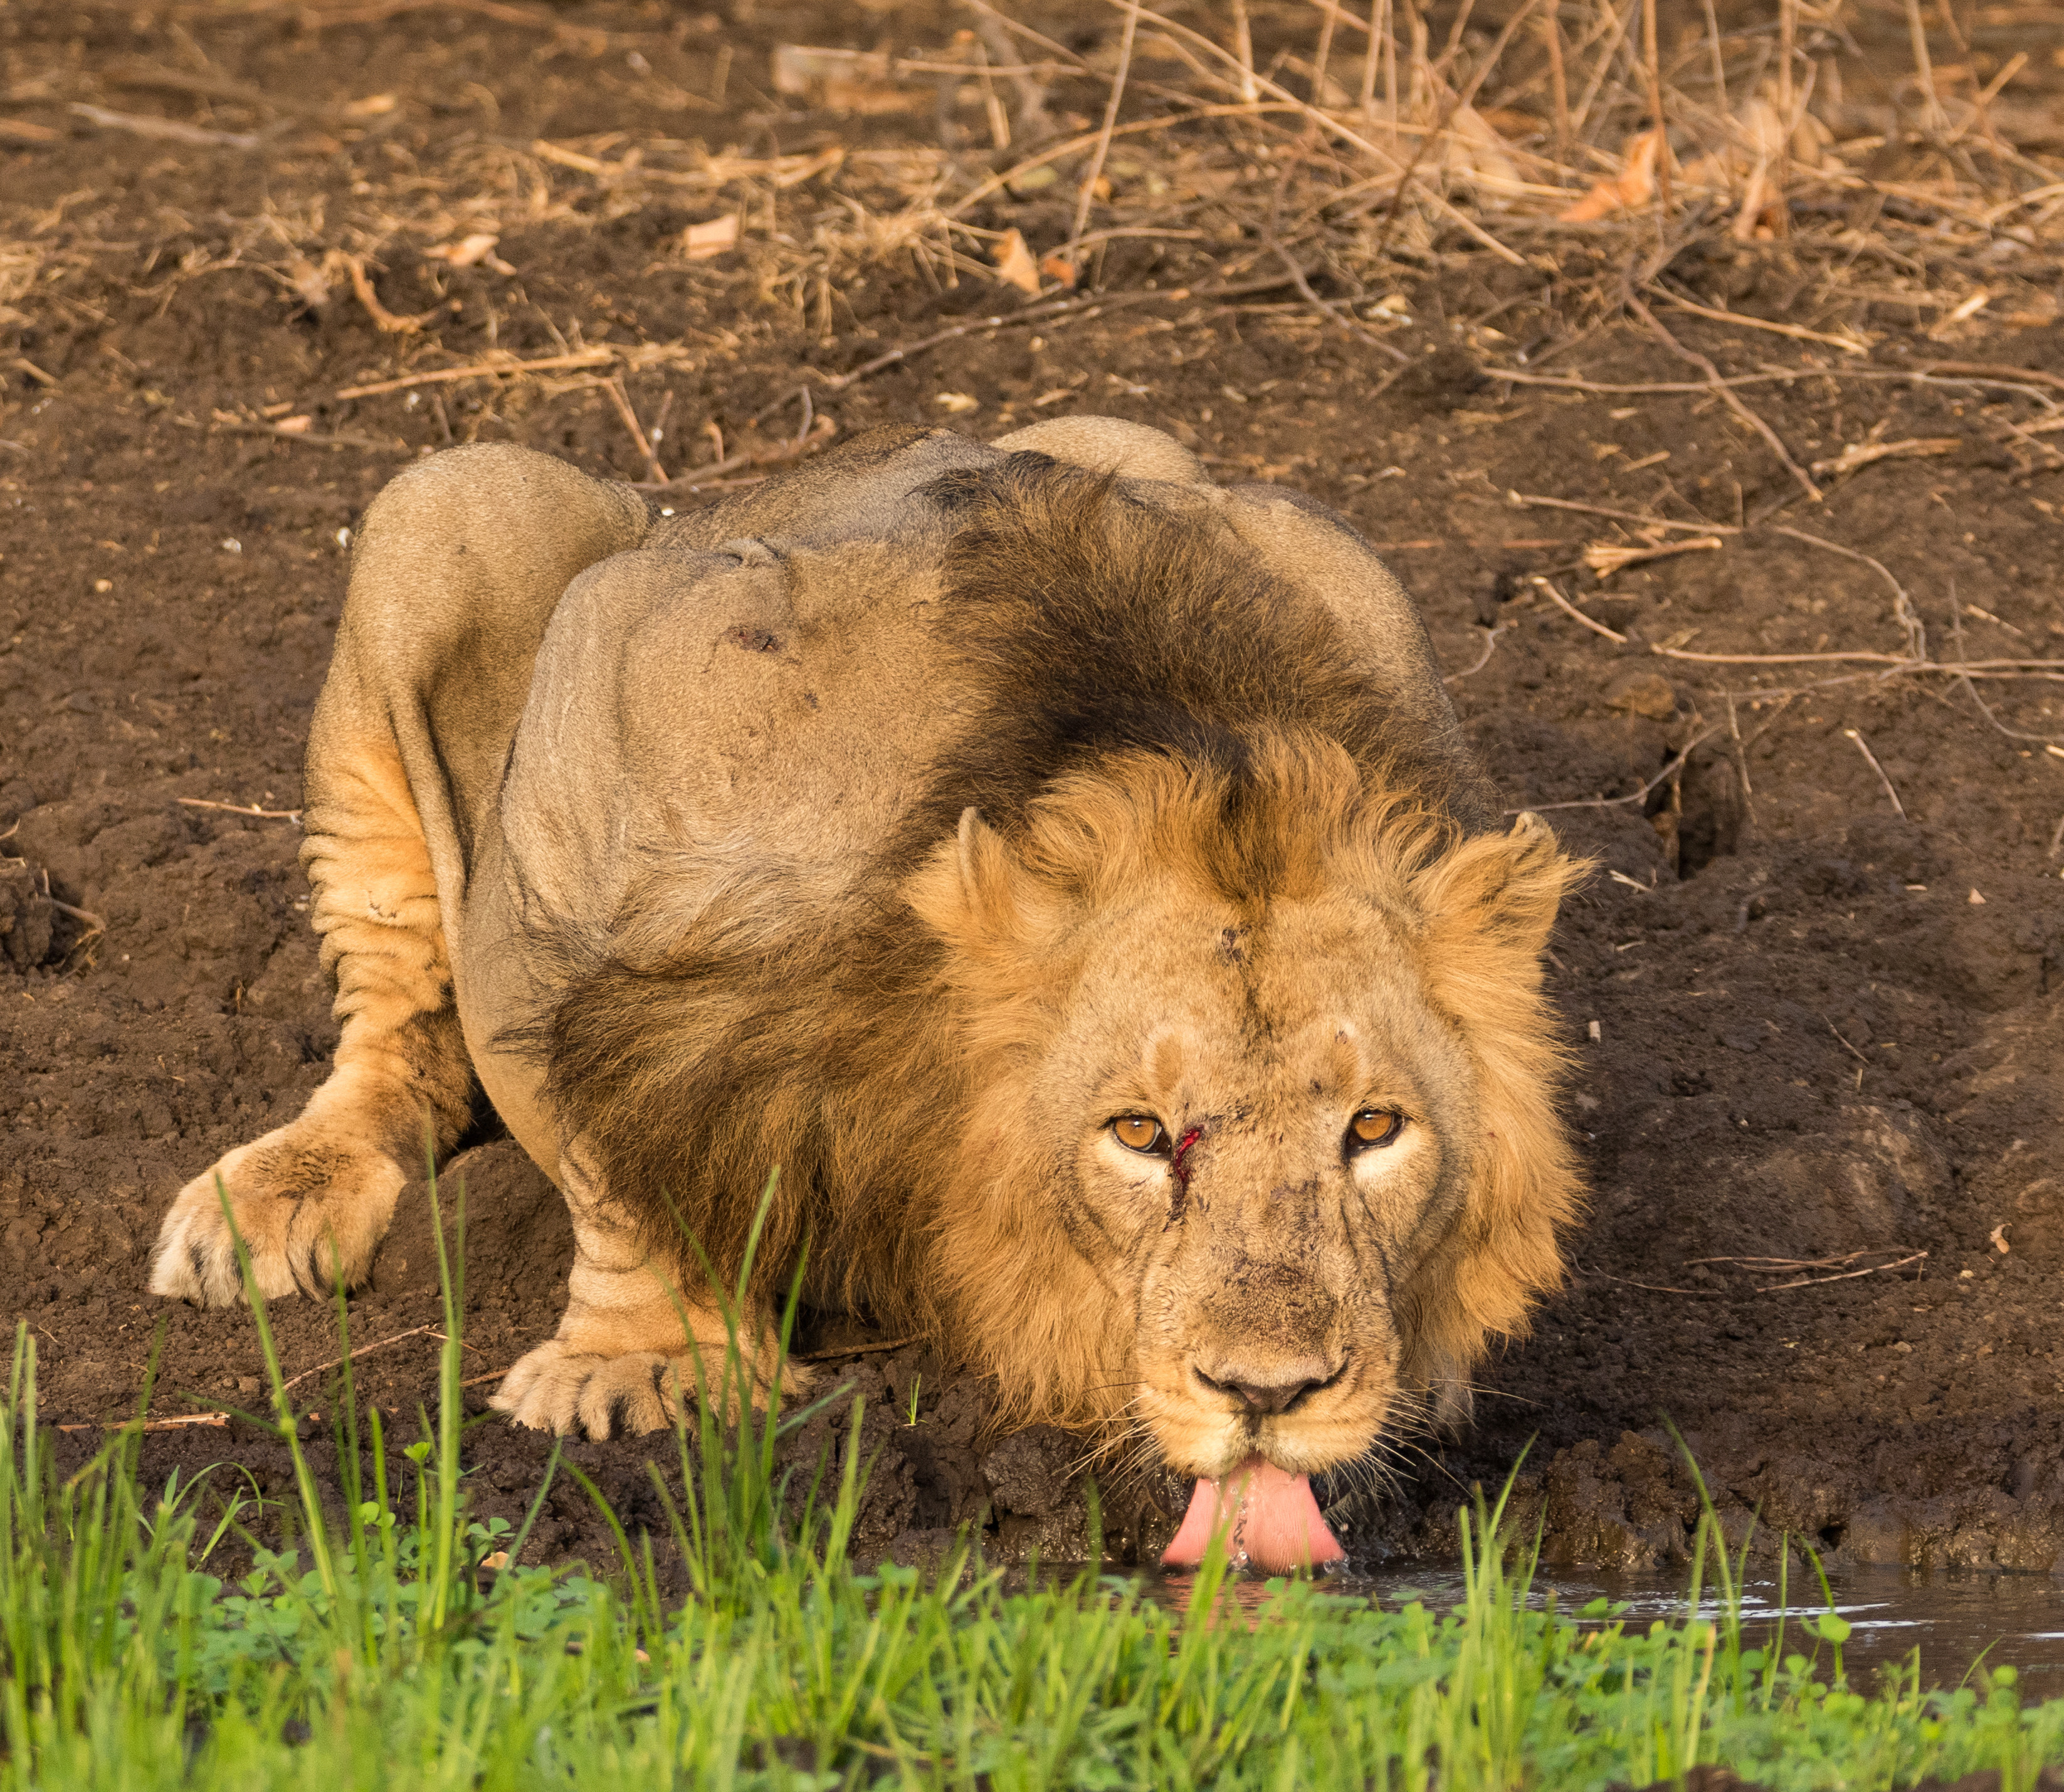  夢想成真 攝影師捕捉到獅子飲水的罕見照